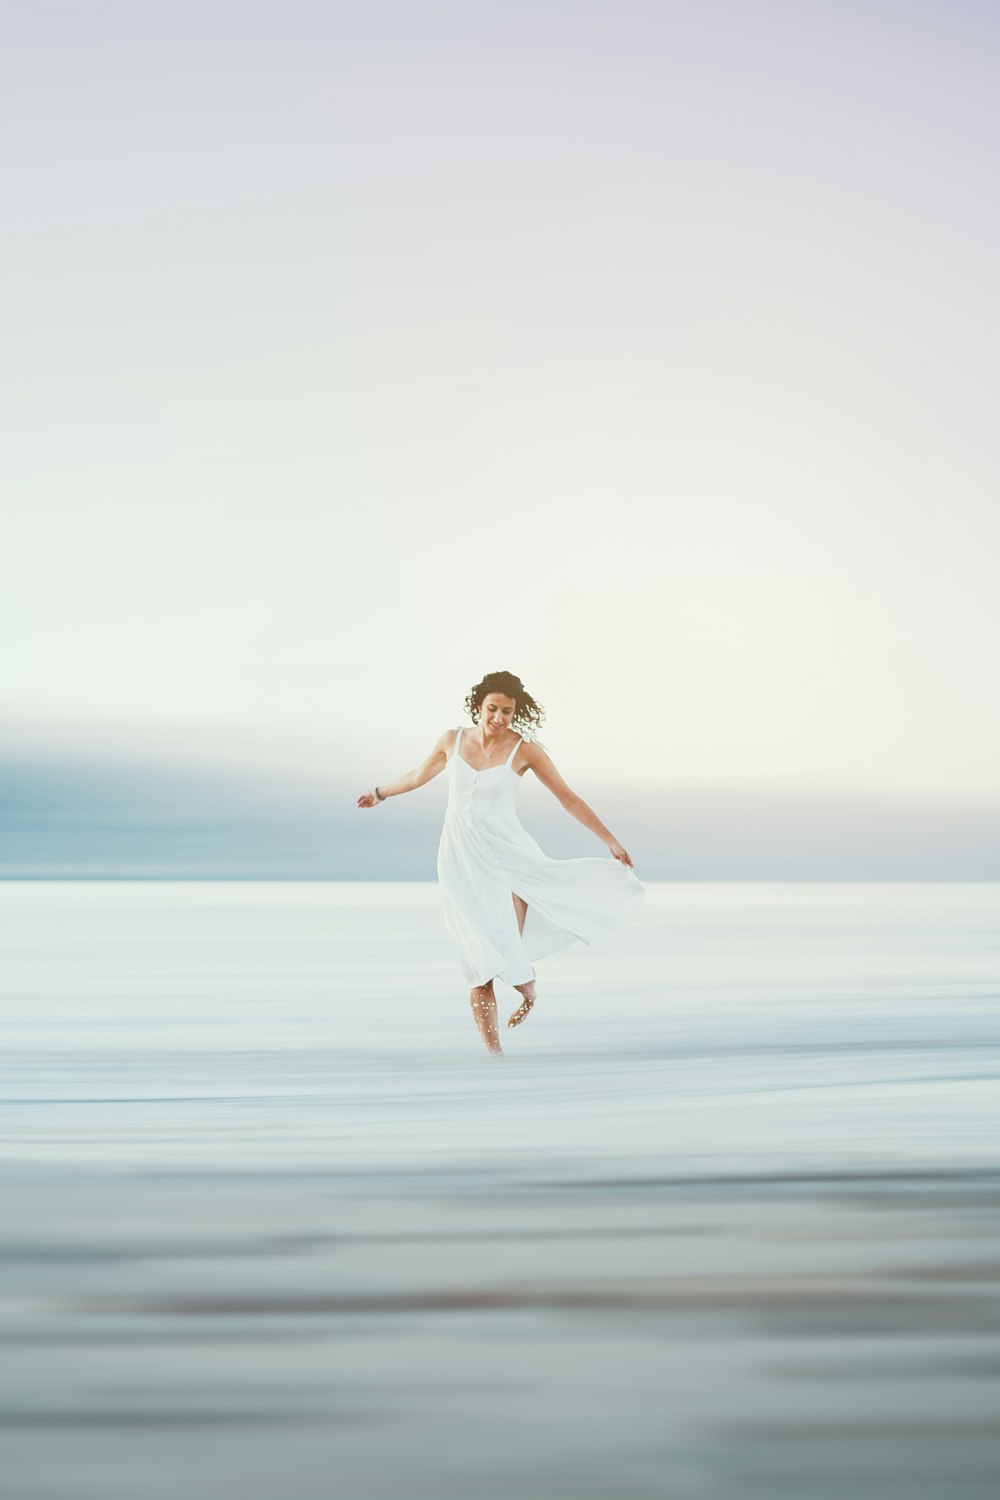 Una donna in un vestito bianco che salta in aria